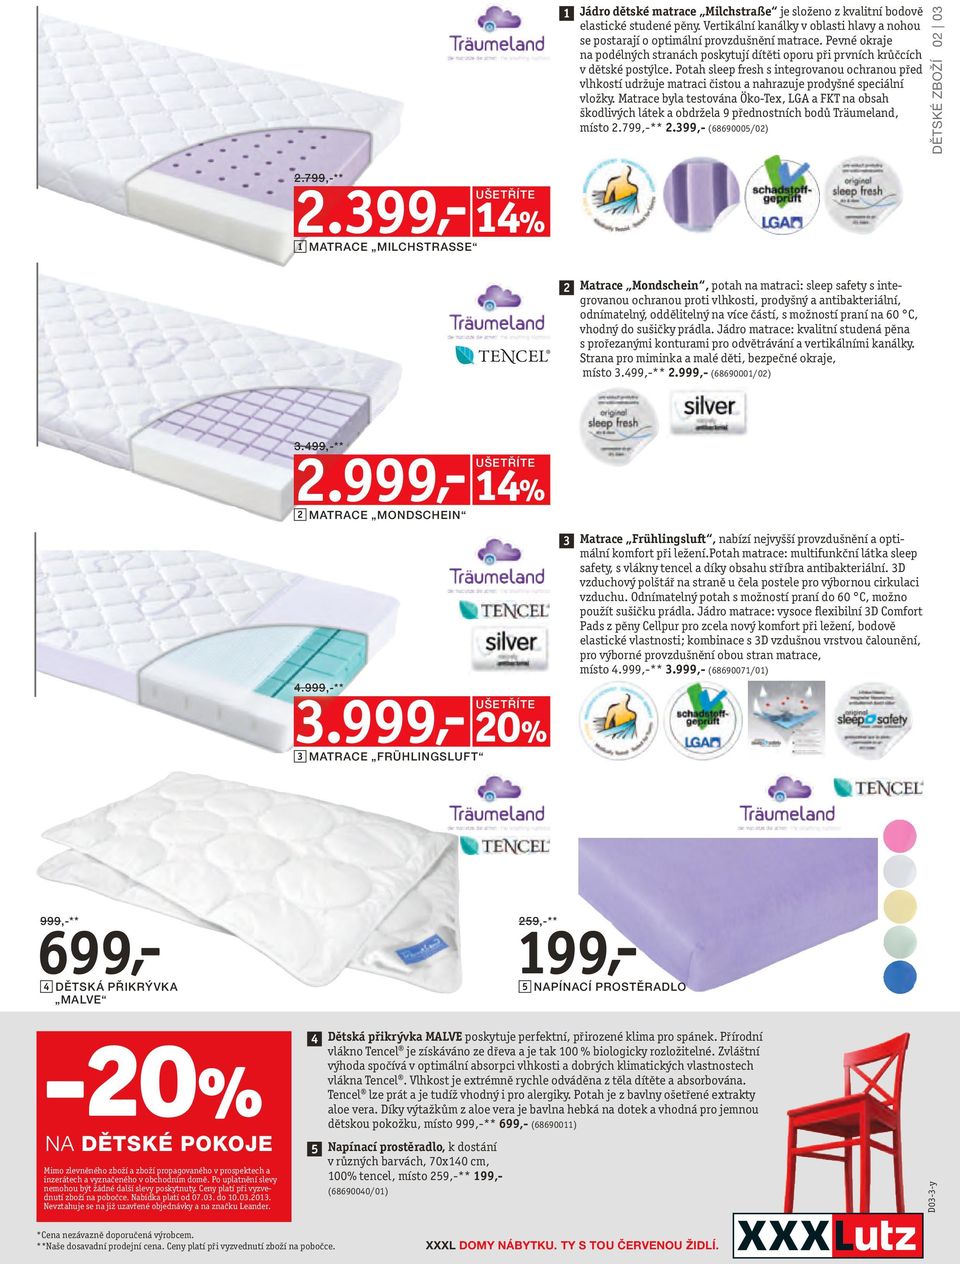 Potah sleep fresh s integrovanou ochranou před vlhkostí udržuje matraci čistou a nahrazuje prodyšné speciální vložky.